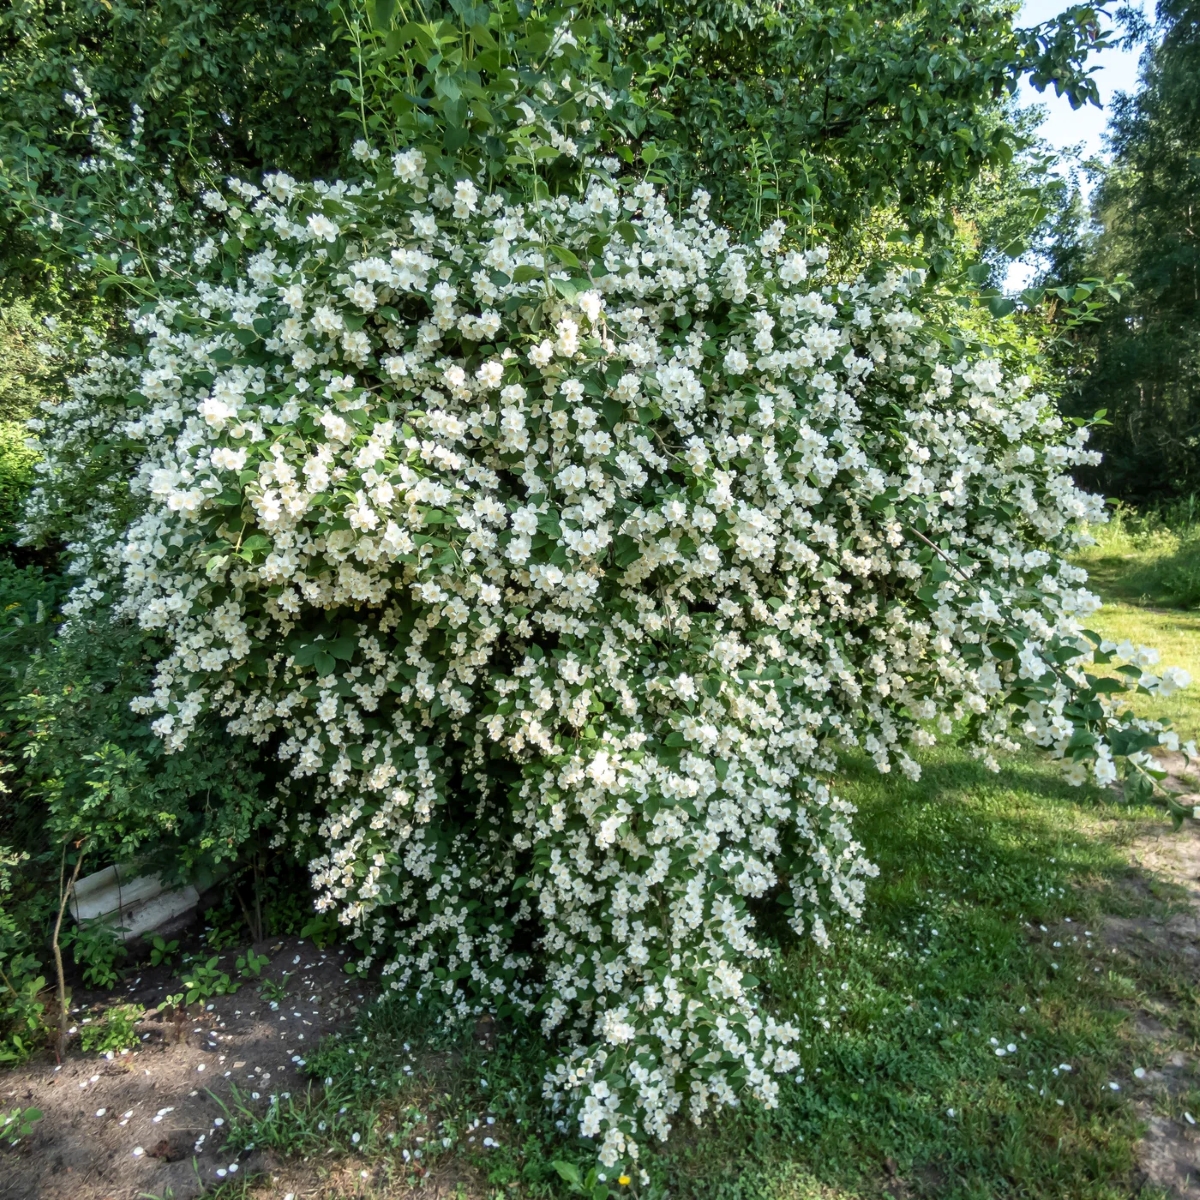 Large mock orange shrub with many white flowers.